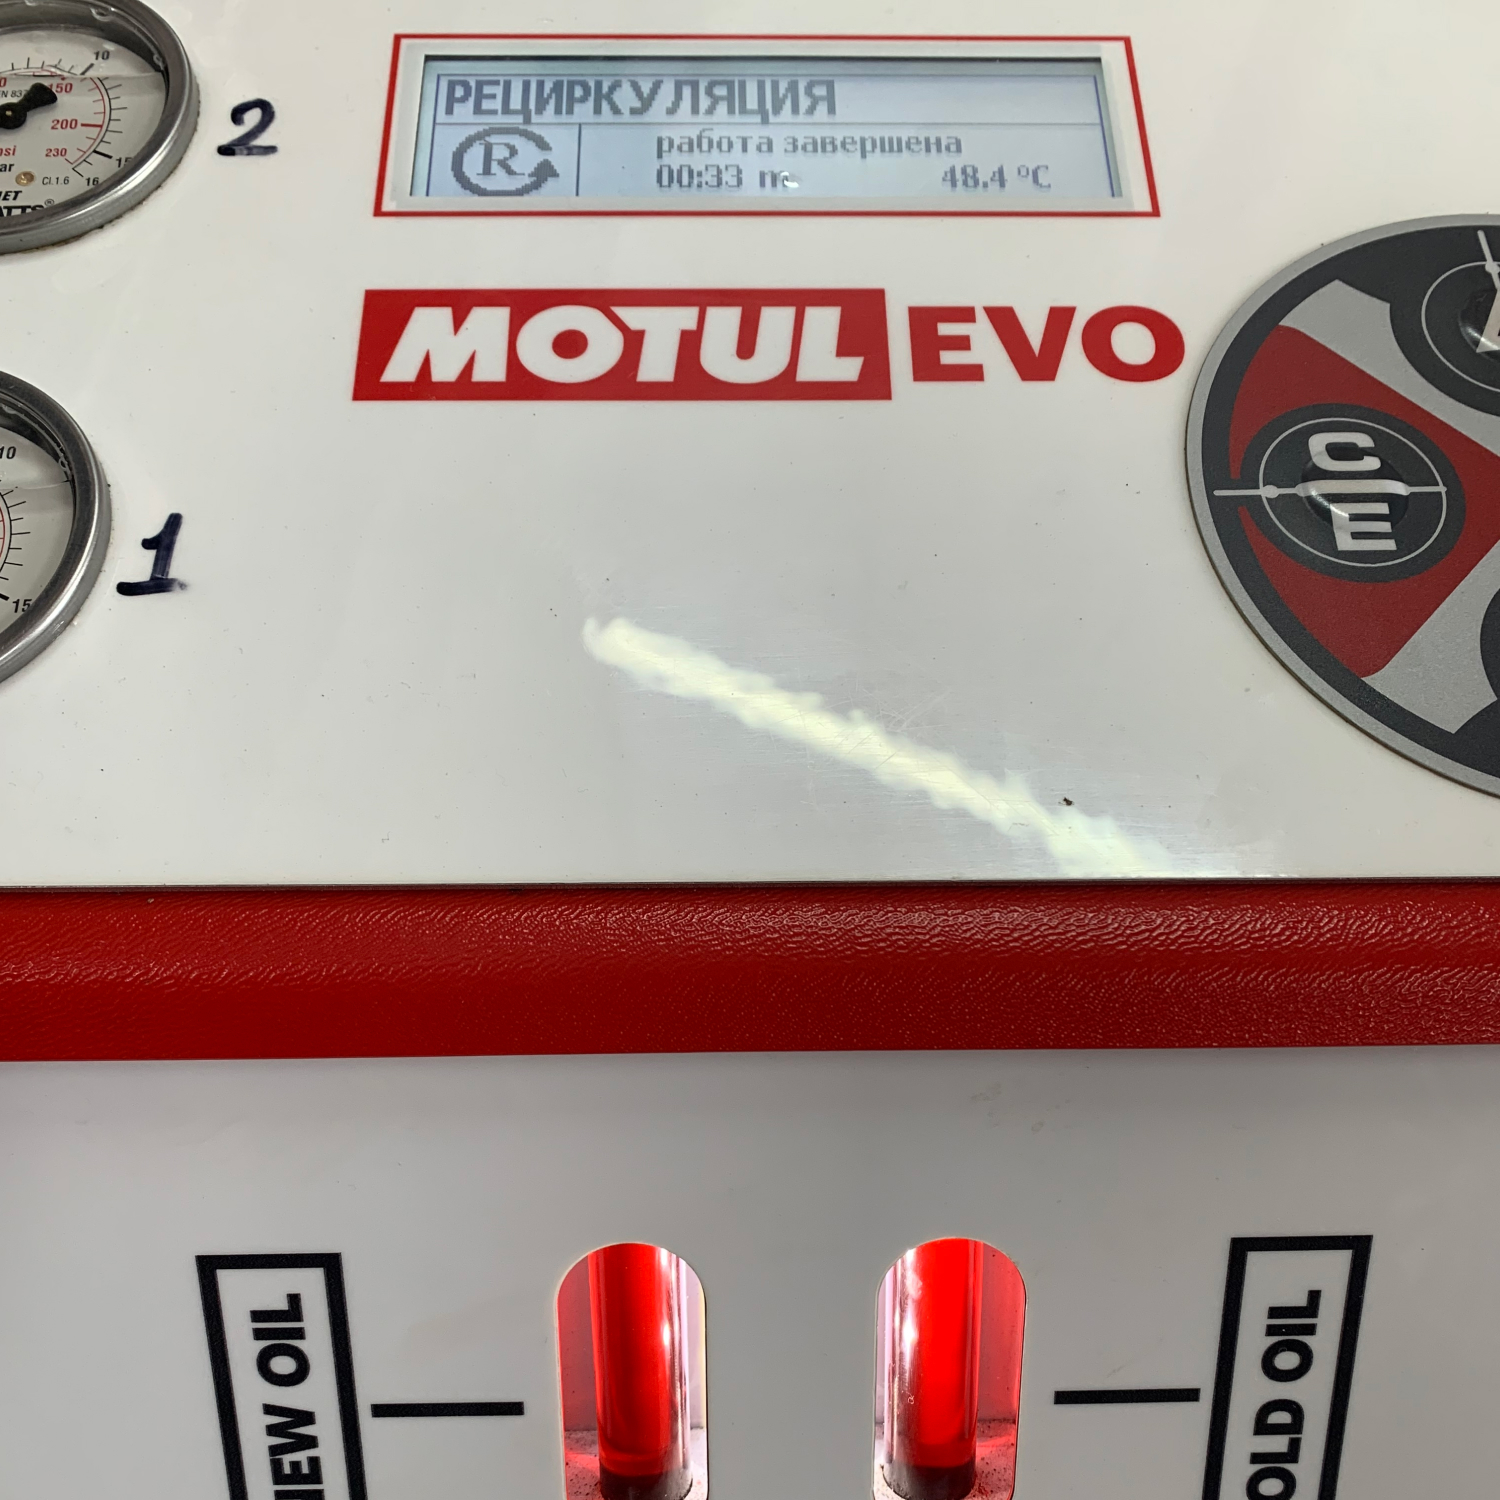 Процесс замены масла в АКПП с использованием сервисной программы MotulEVO